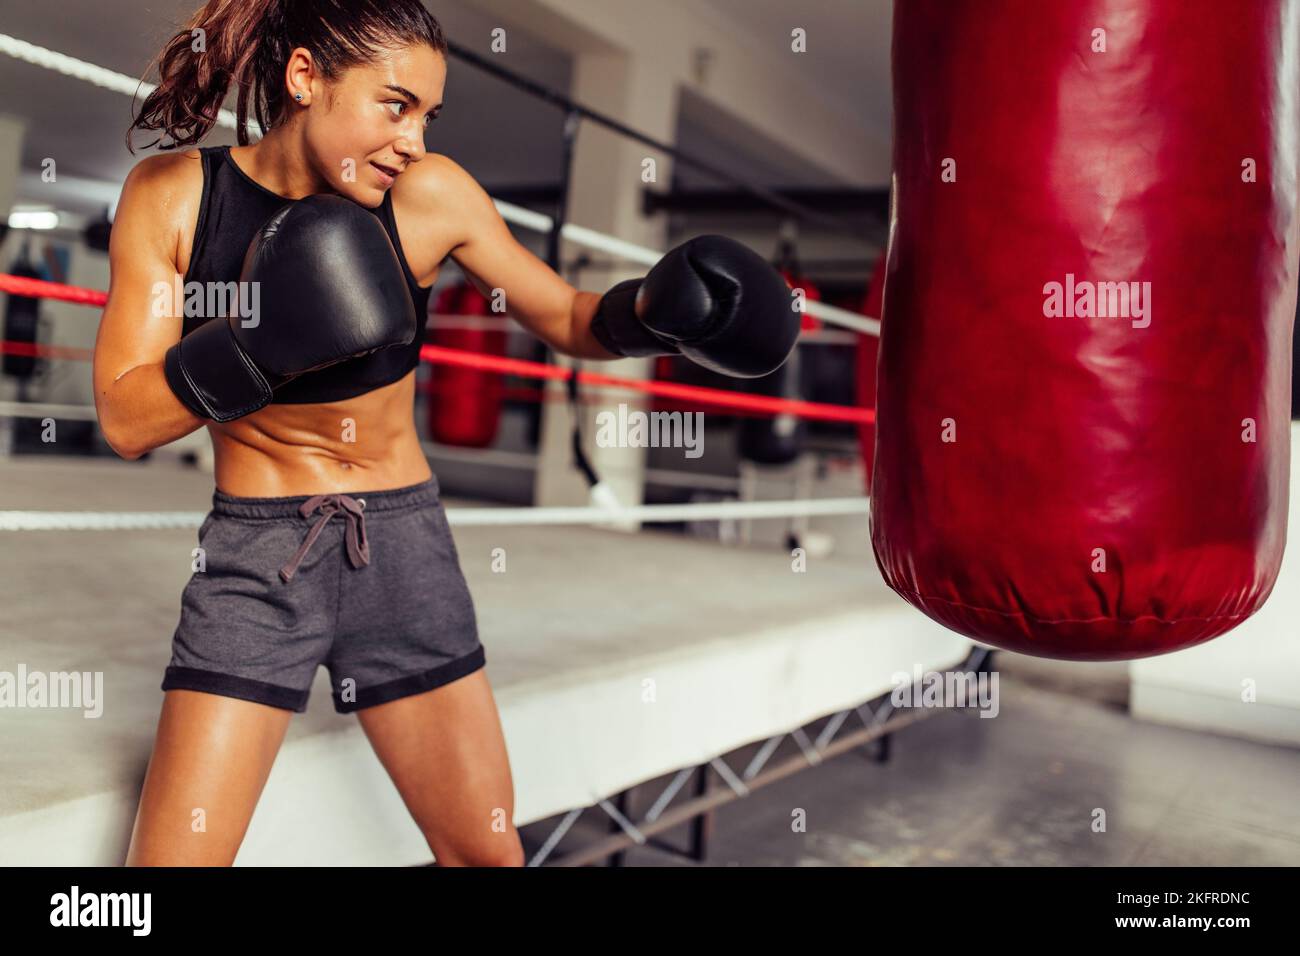 Boxer femenino atlético haciendo ejercicio con una bolsa de ejercicios en un gimnasio. Mujer joven deportiva practicando sus técnicas de punching en un gimnasio de boxeo. Foto de stock